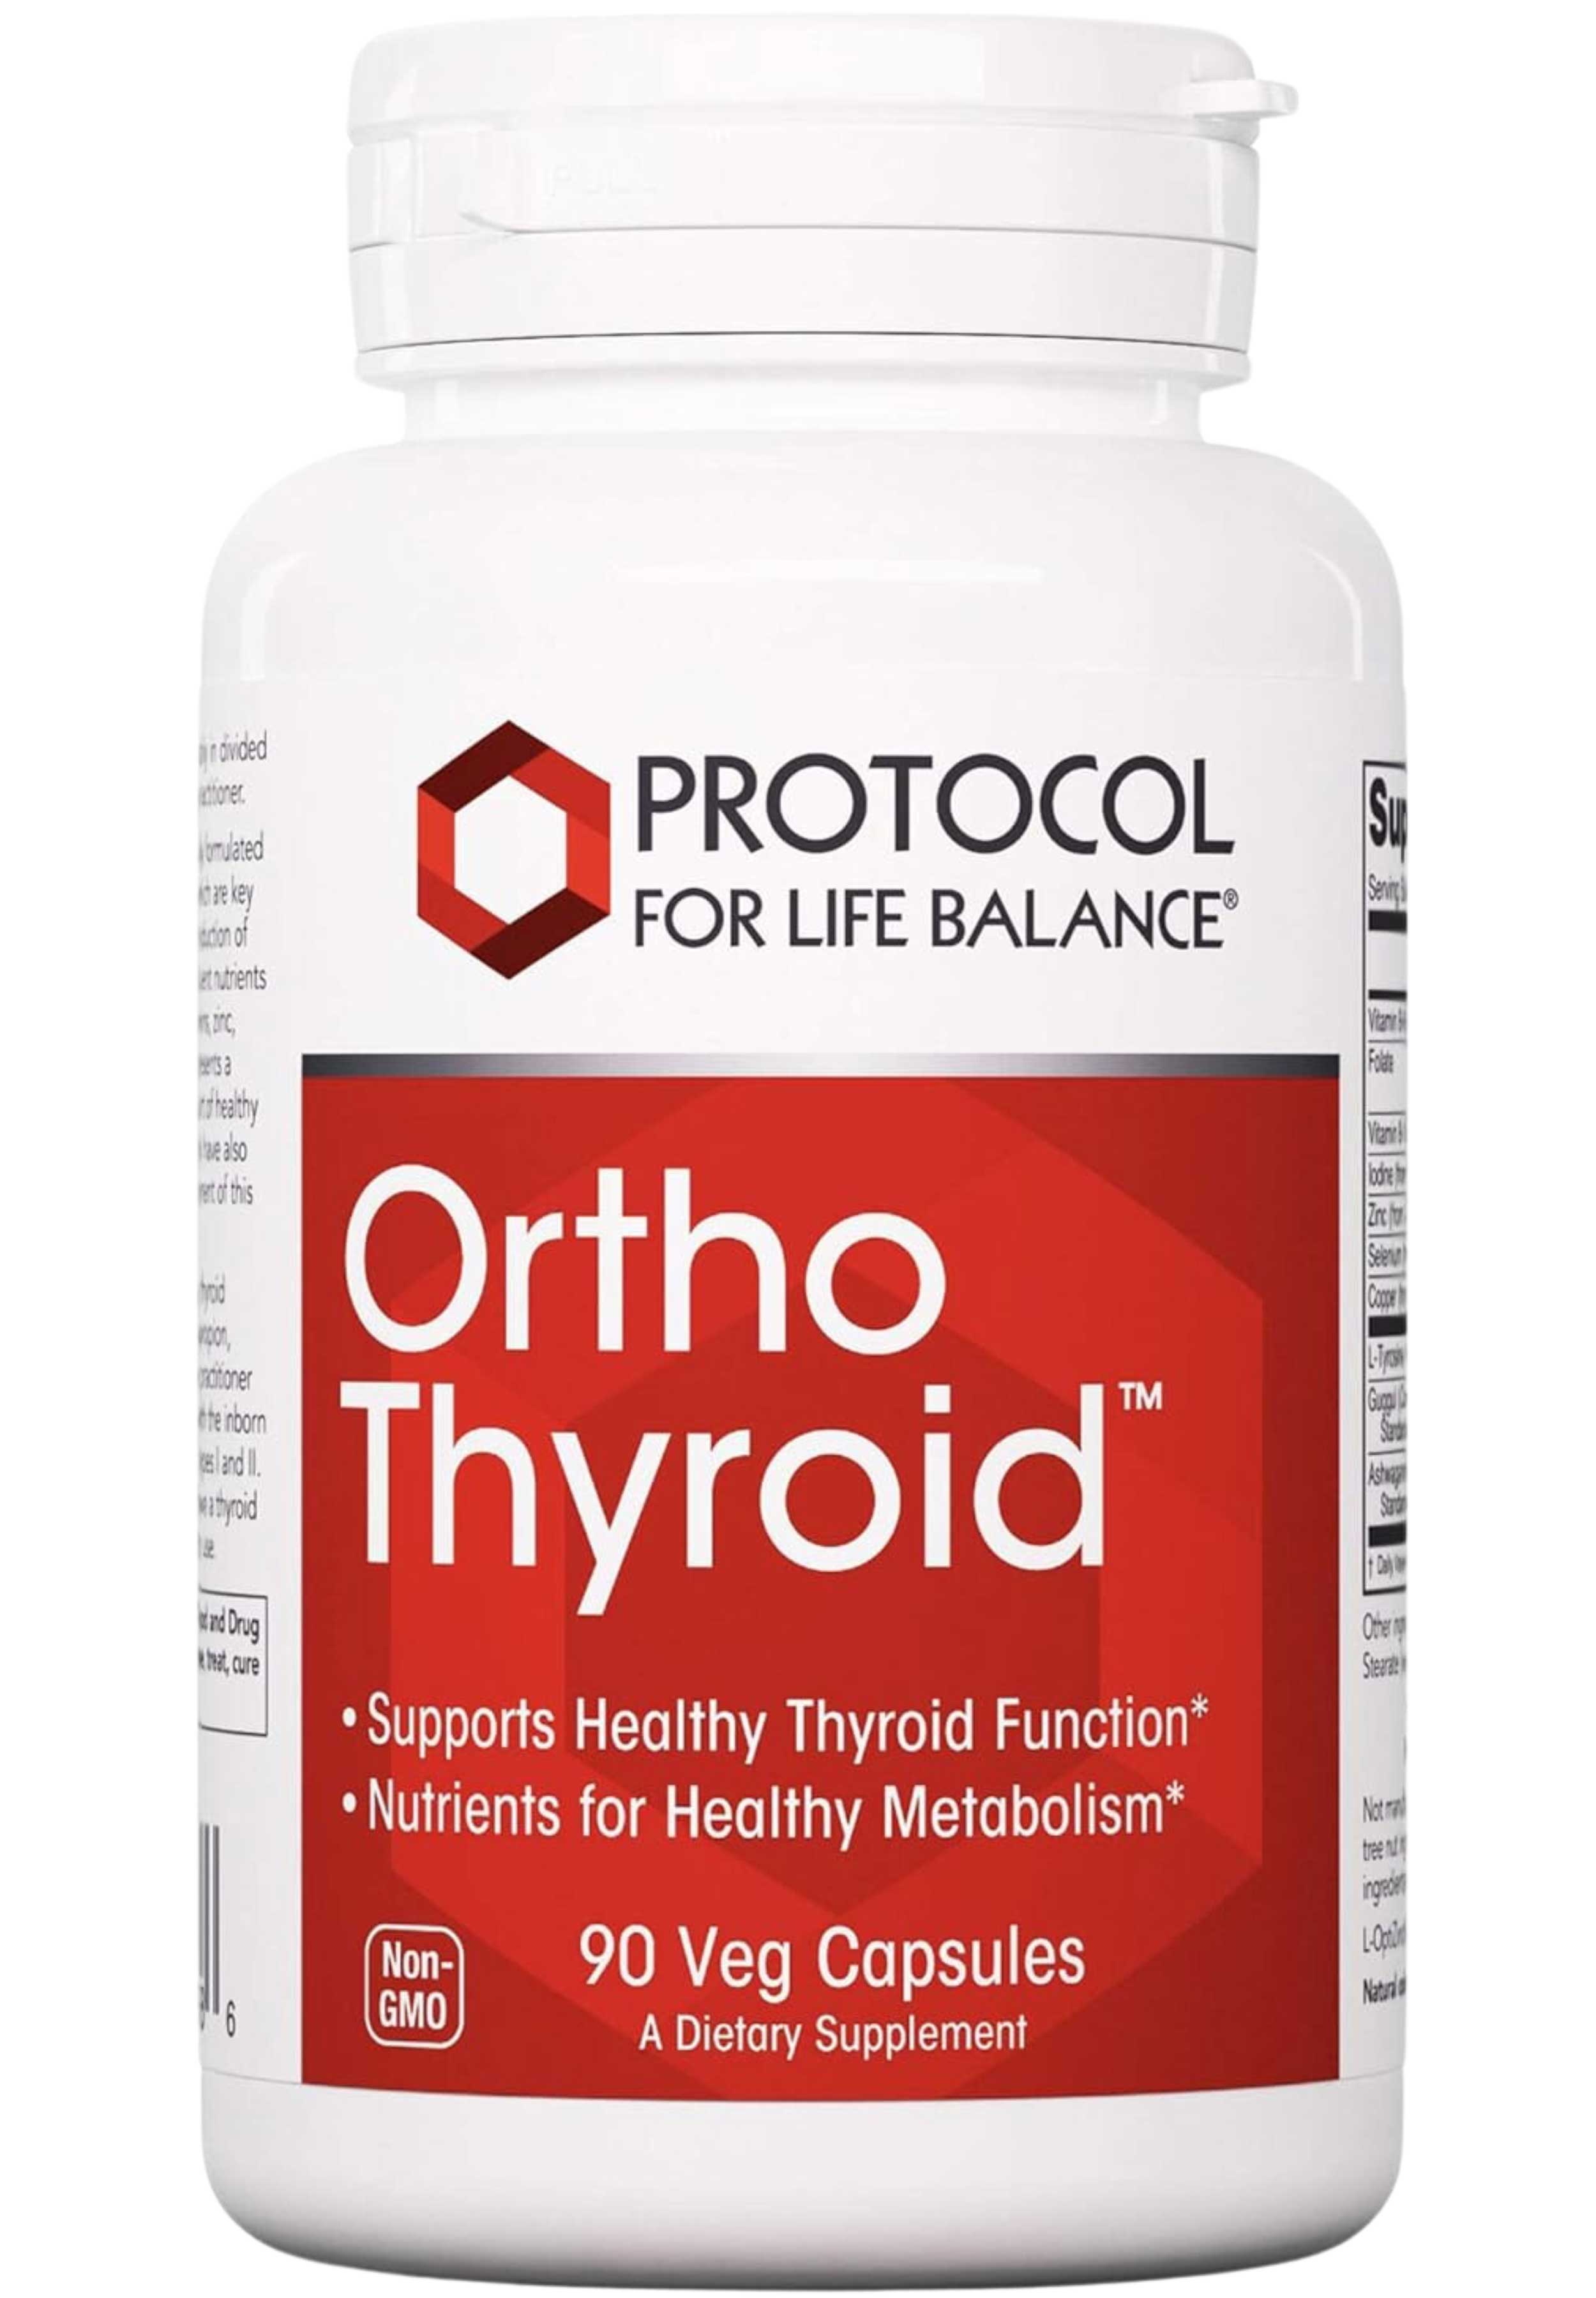 Protocol for Life Balance Ortho Thyroid